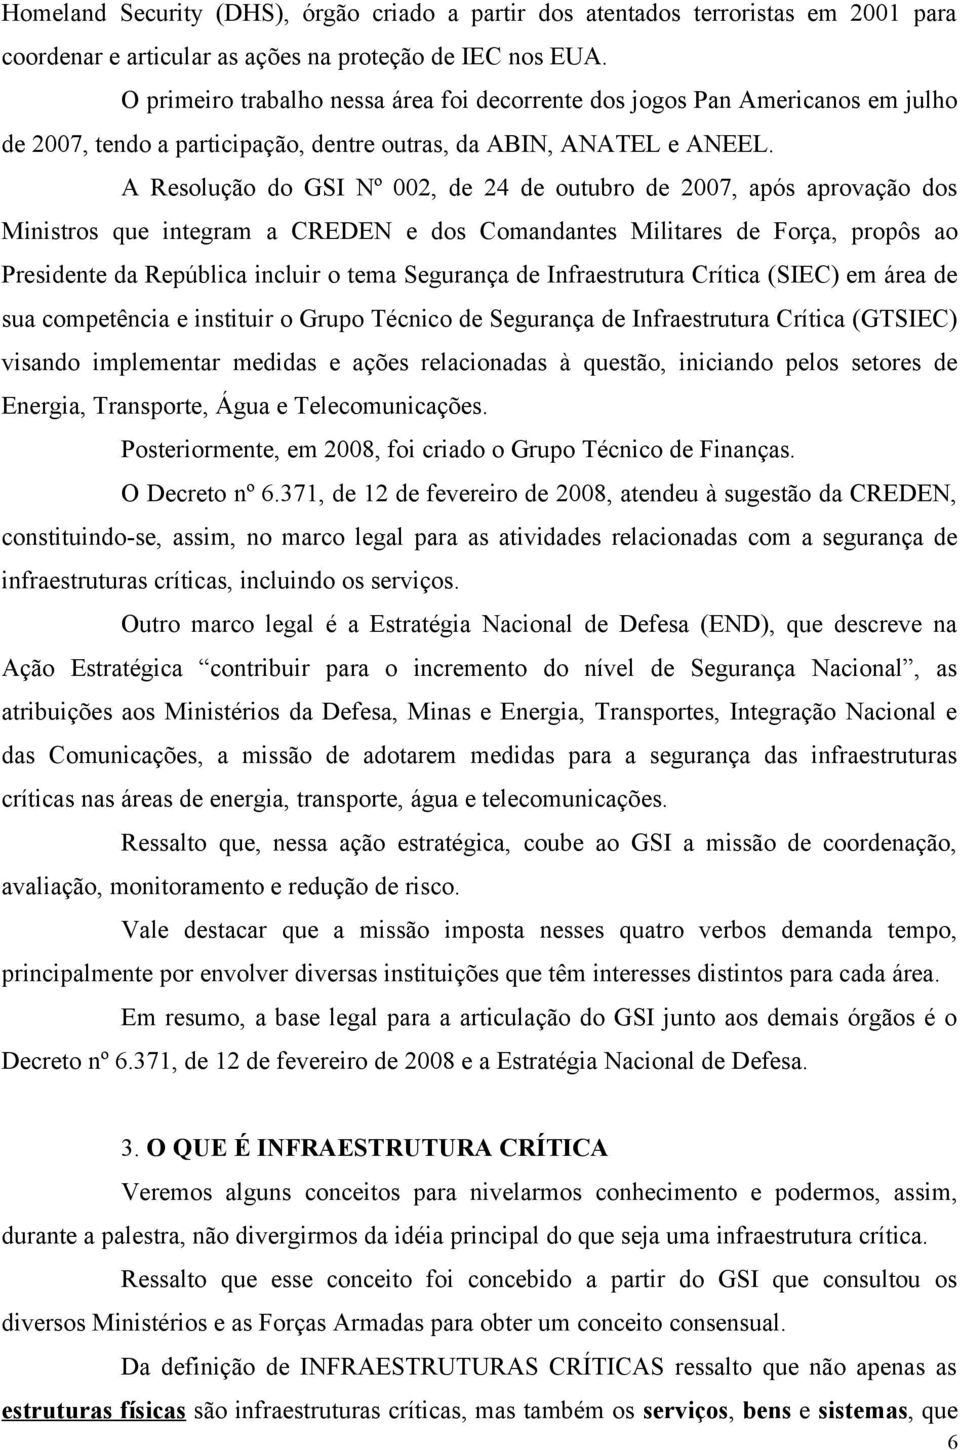 A Resolução do GSI Nº 002, de 24 de outubro de 2007, após aprovação dos Ministros que integram a CREDEN e dos Comandantes Militares de Força, propôs ao Presidente da República incluir o tema